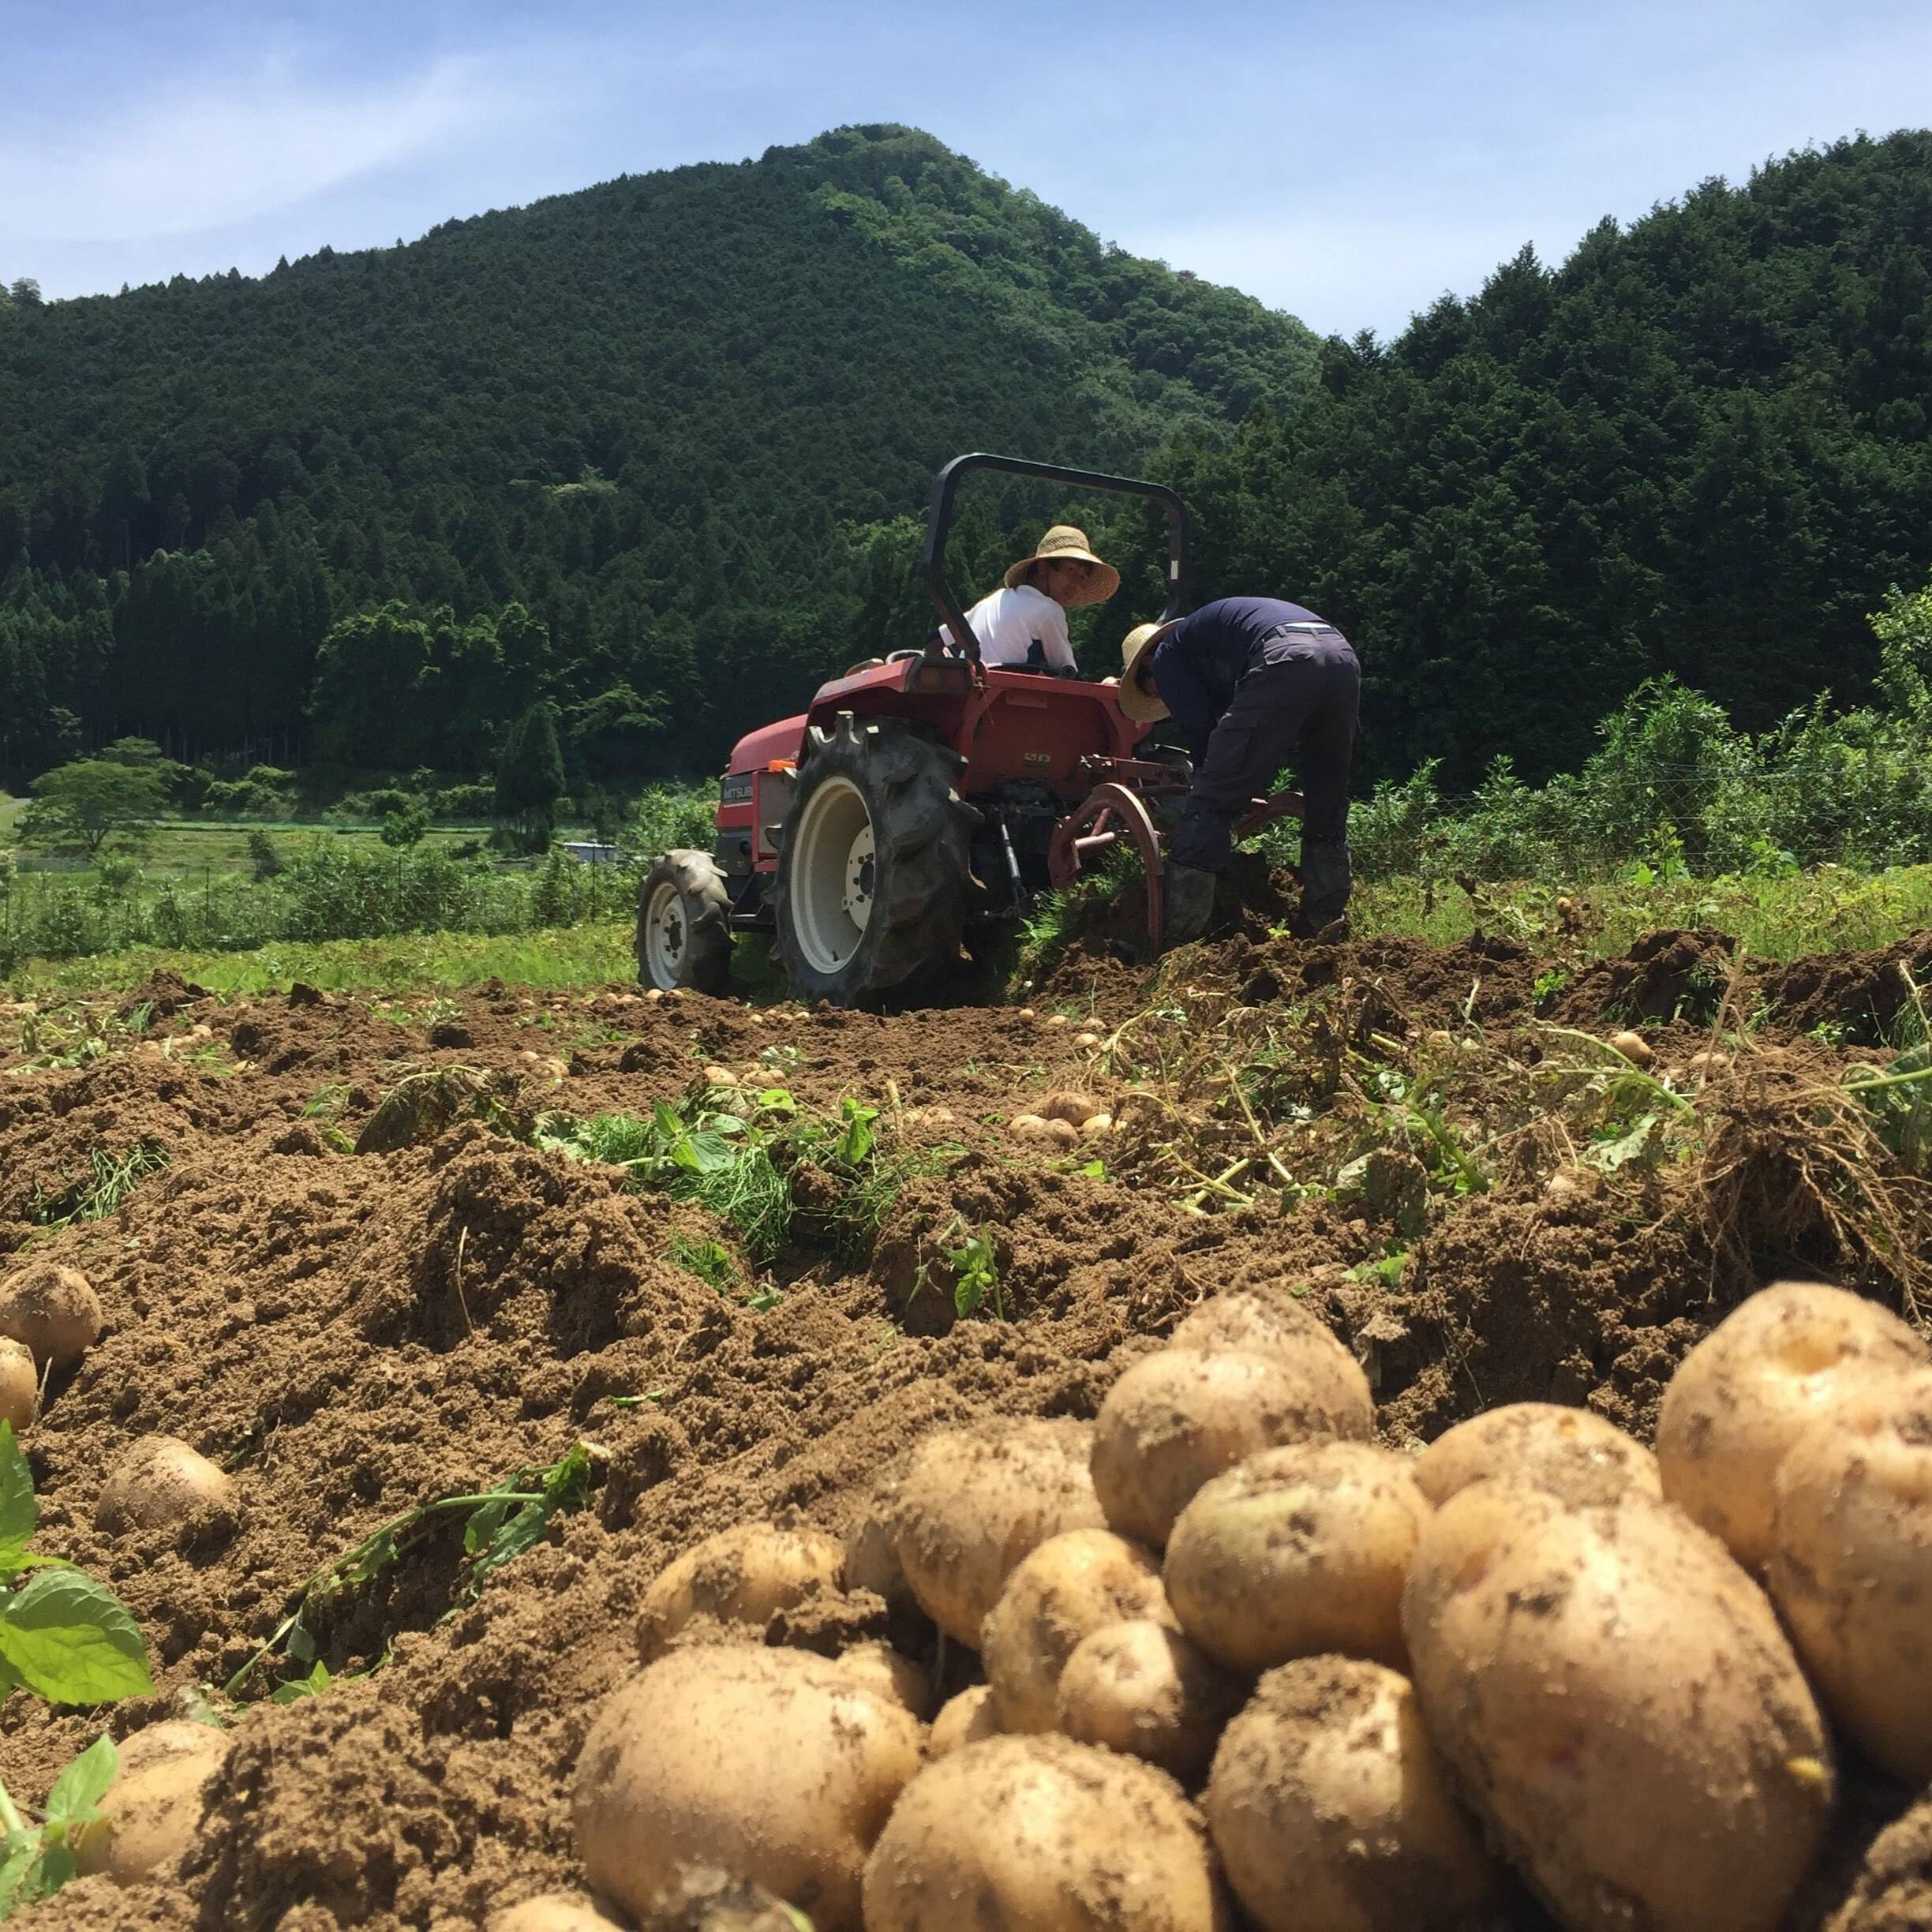 夏もゴロゴロカレーが食べたい 有機ジャガイモ 男爵 お得な10kg 奈良県産 食べチョク 農家 漁師の産直ネット通販 旬の食材を生産者直送